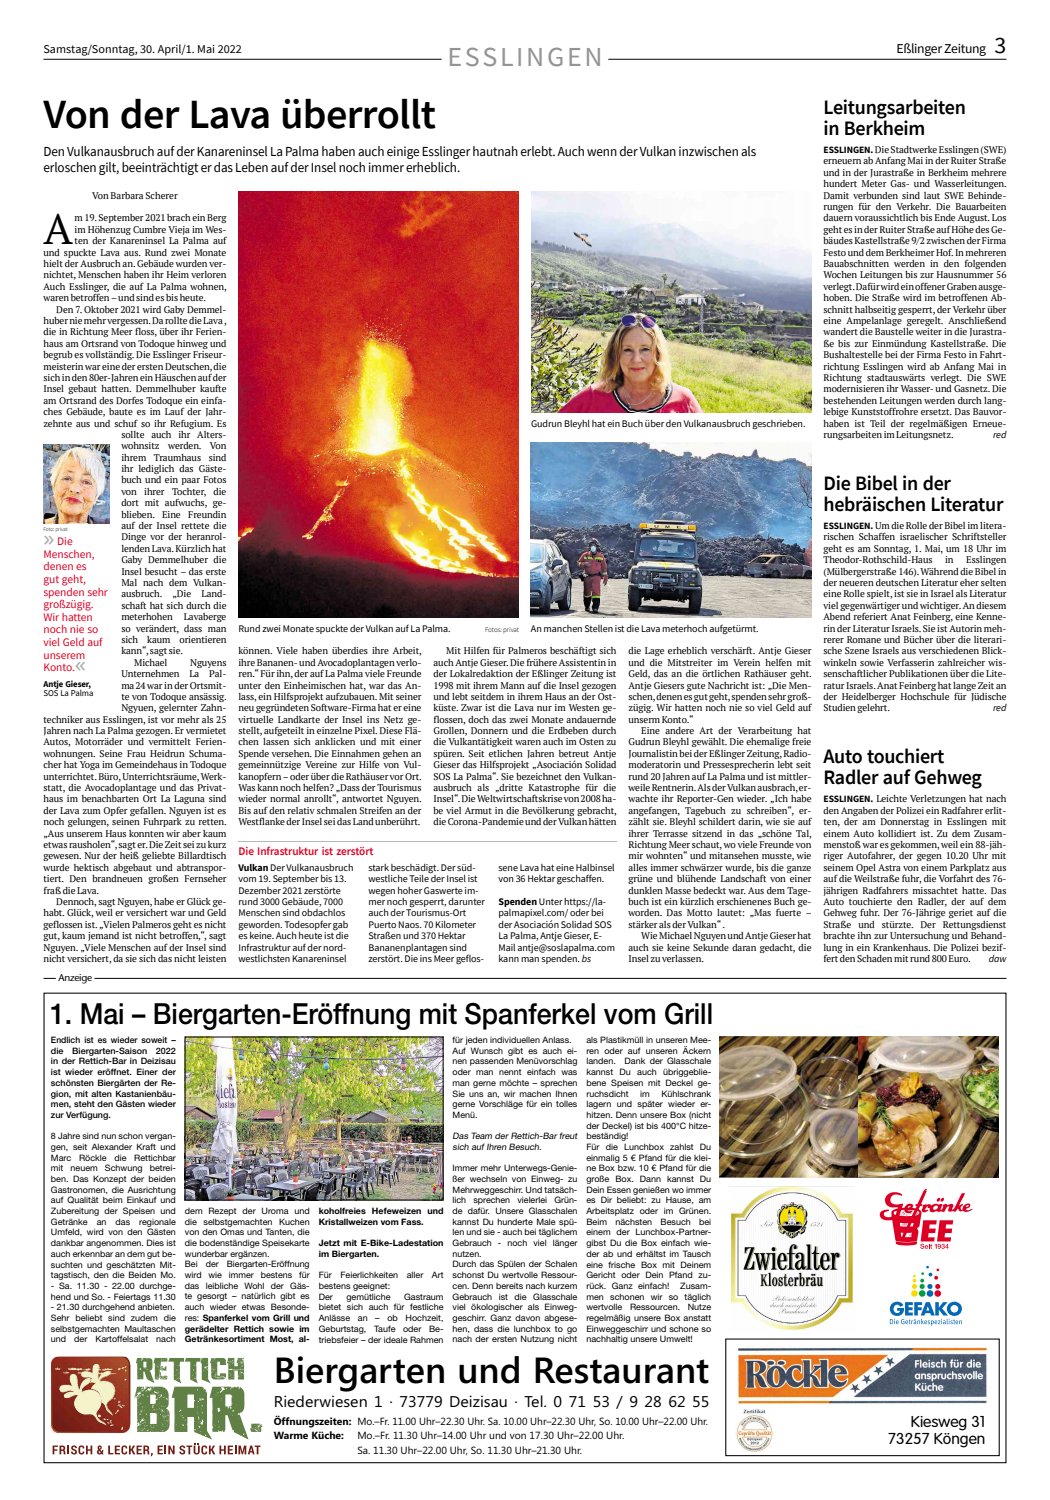 Eßlinger Zeitung Vulkanausbruch La Palma